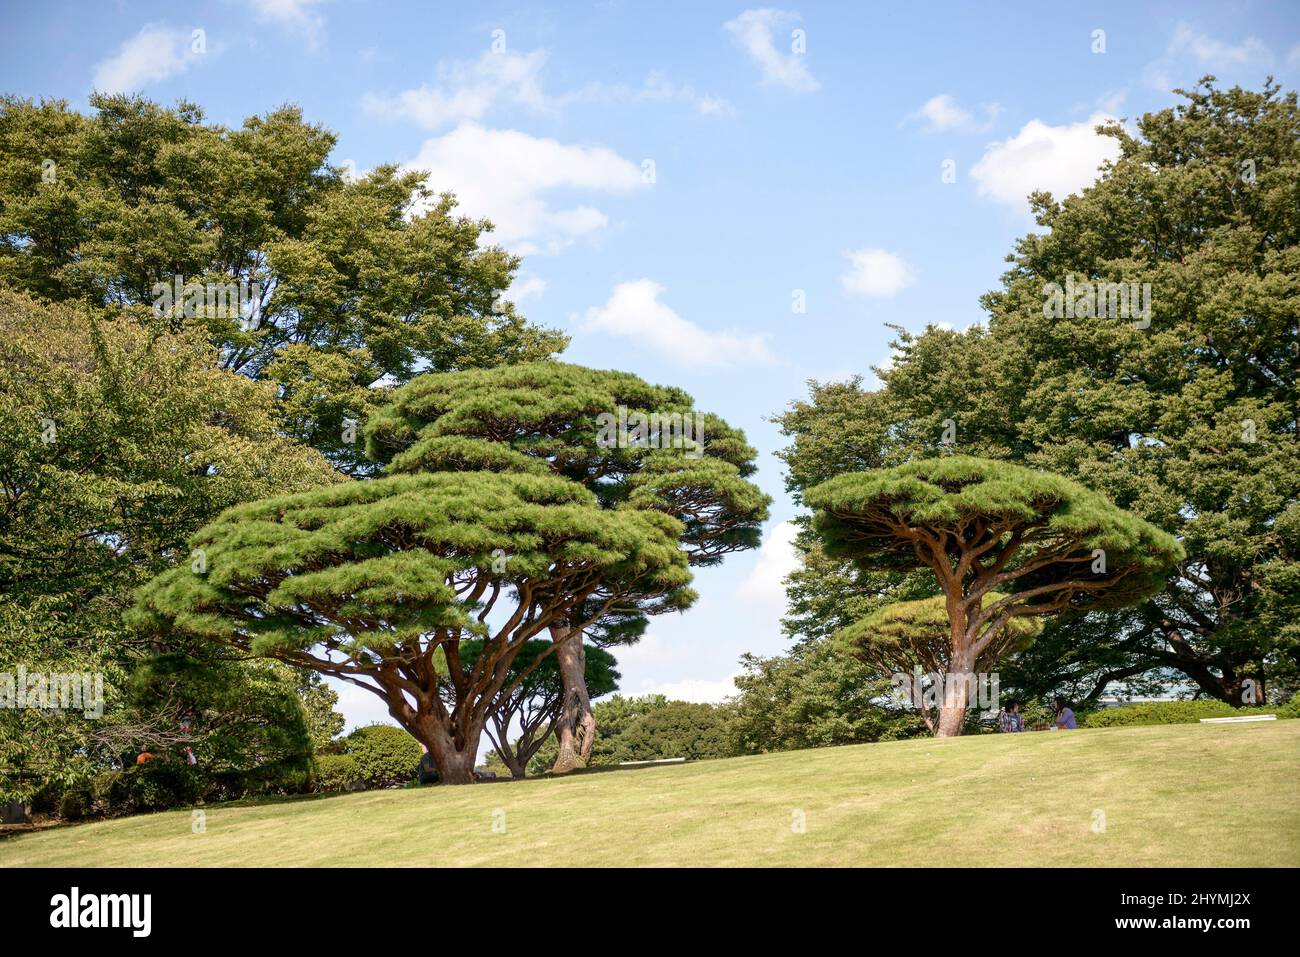 Japanese red pine (Pinus densiflora 'Umbraculifera', Pinus densiflora Umbraculifera), cultivar Umbraculifera, Japan, Honshu, Shinjuku Gyoen Garden Stock Photo